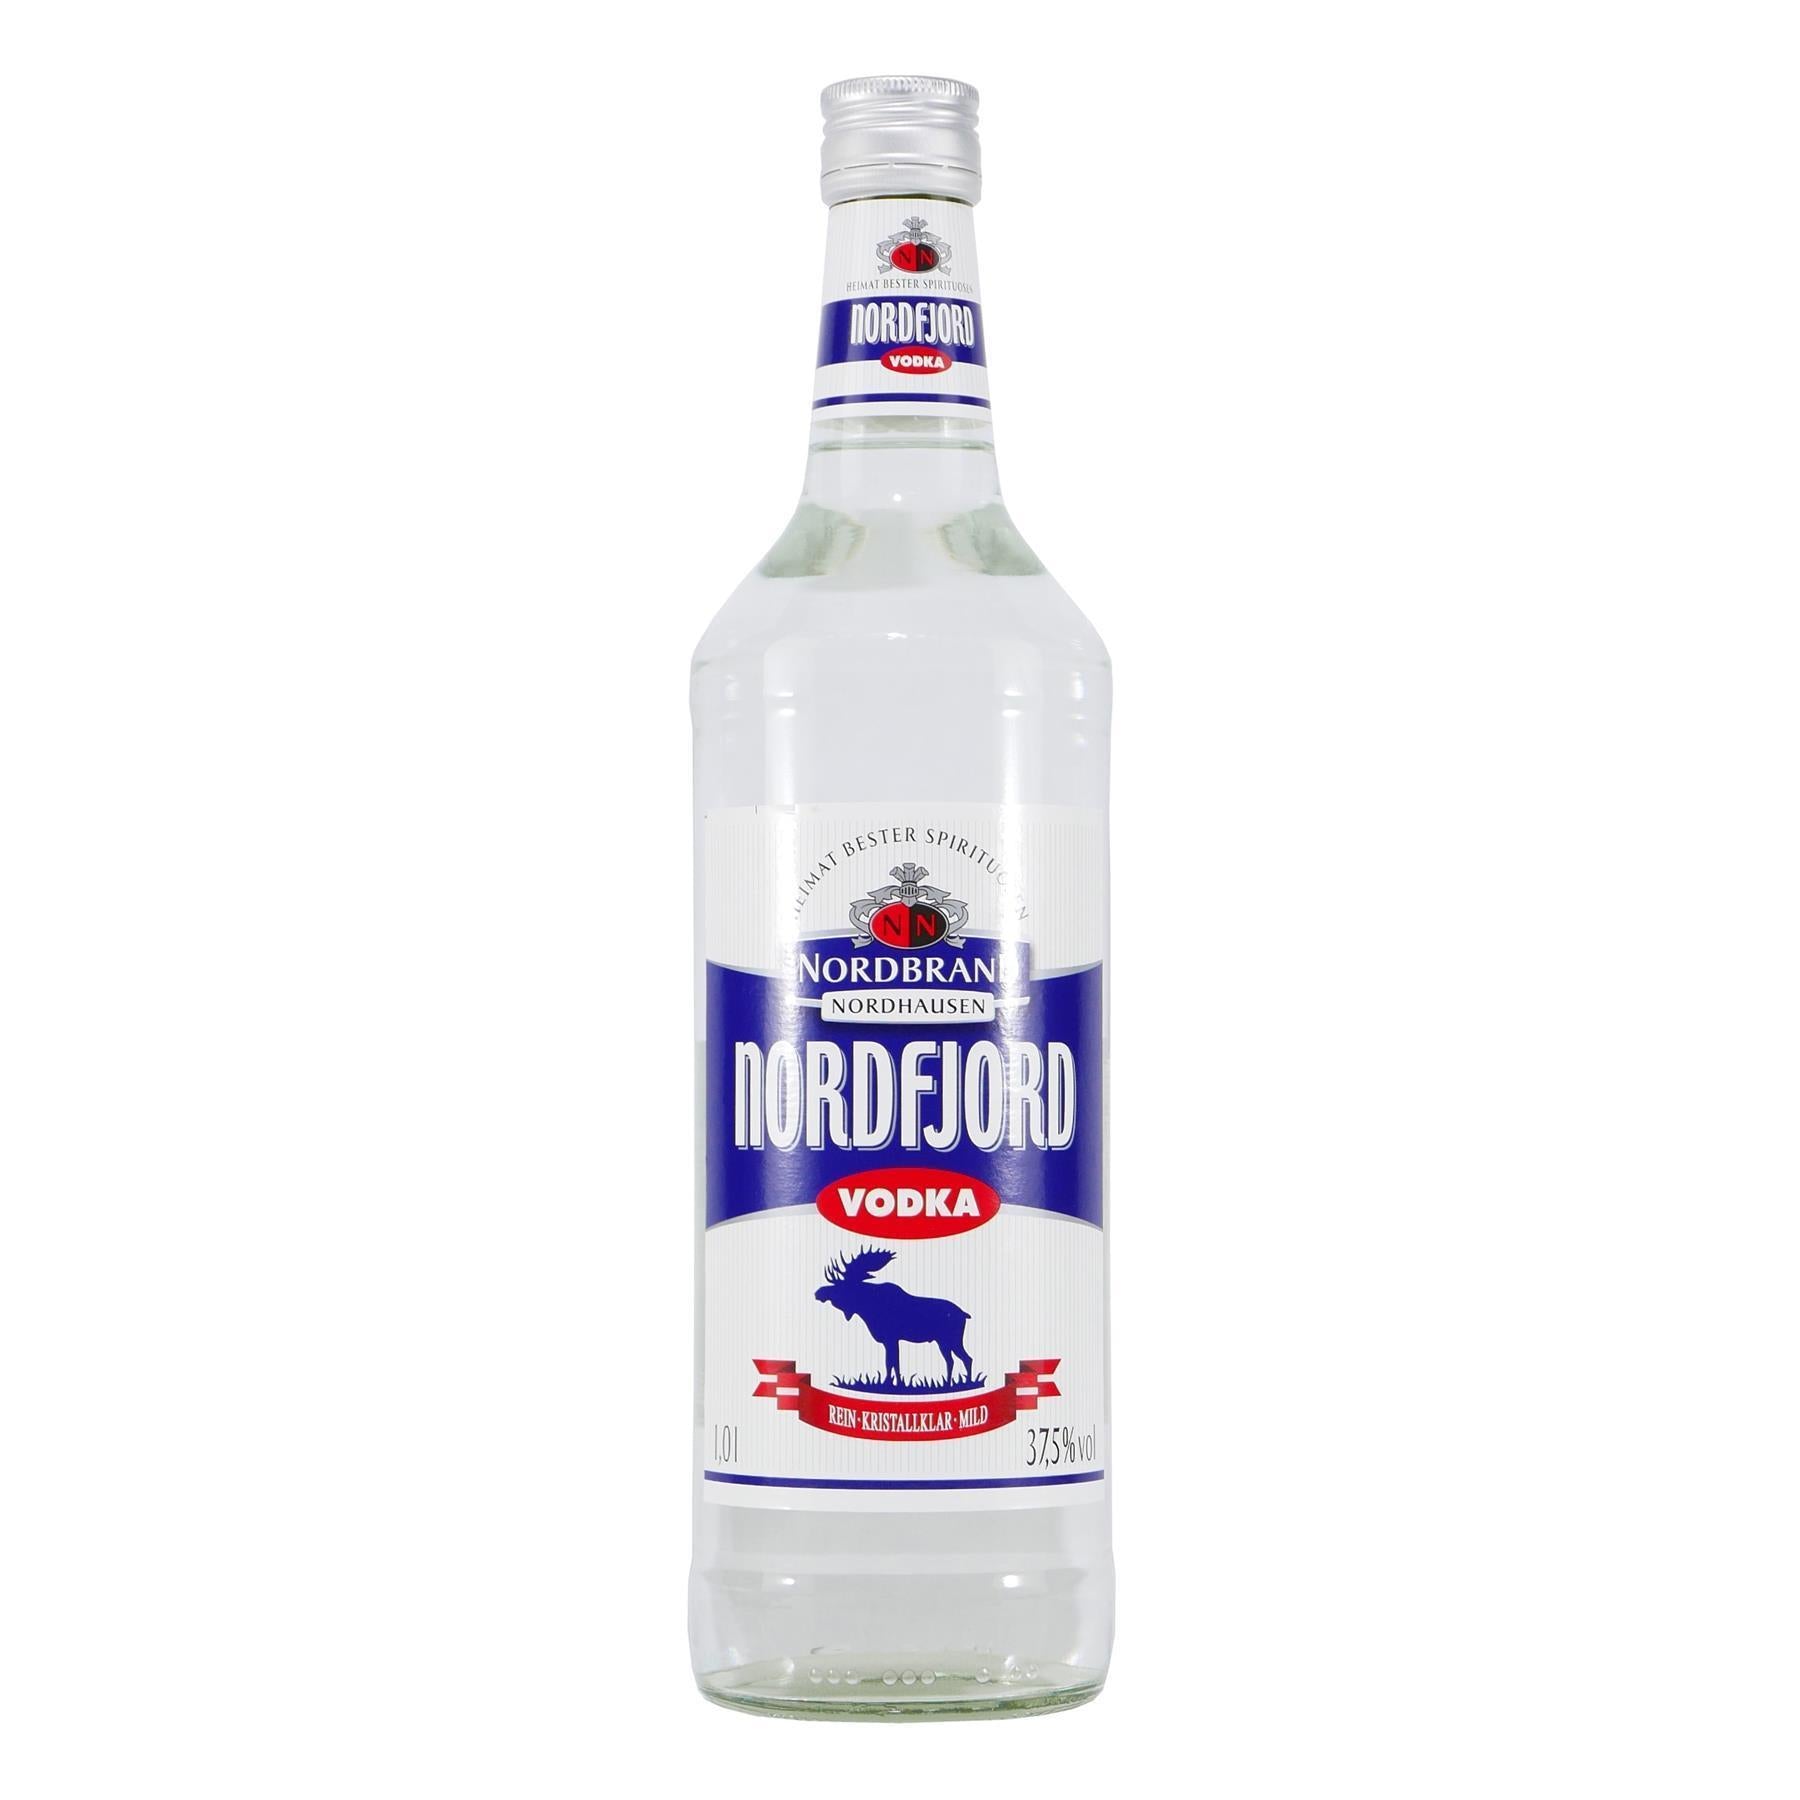 Nordbrand Nordfjord Vodka (6 x 1,0L)